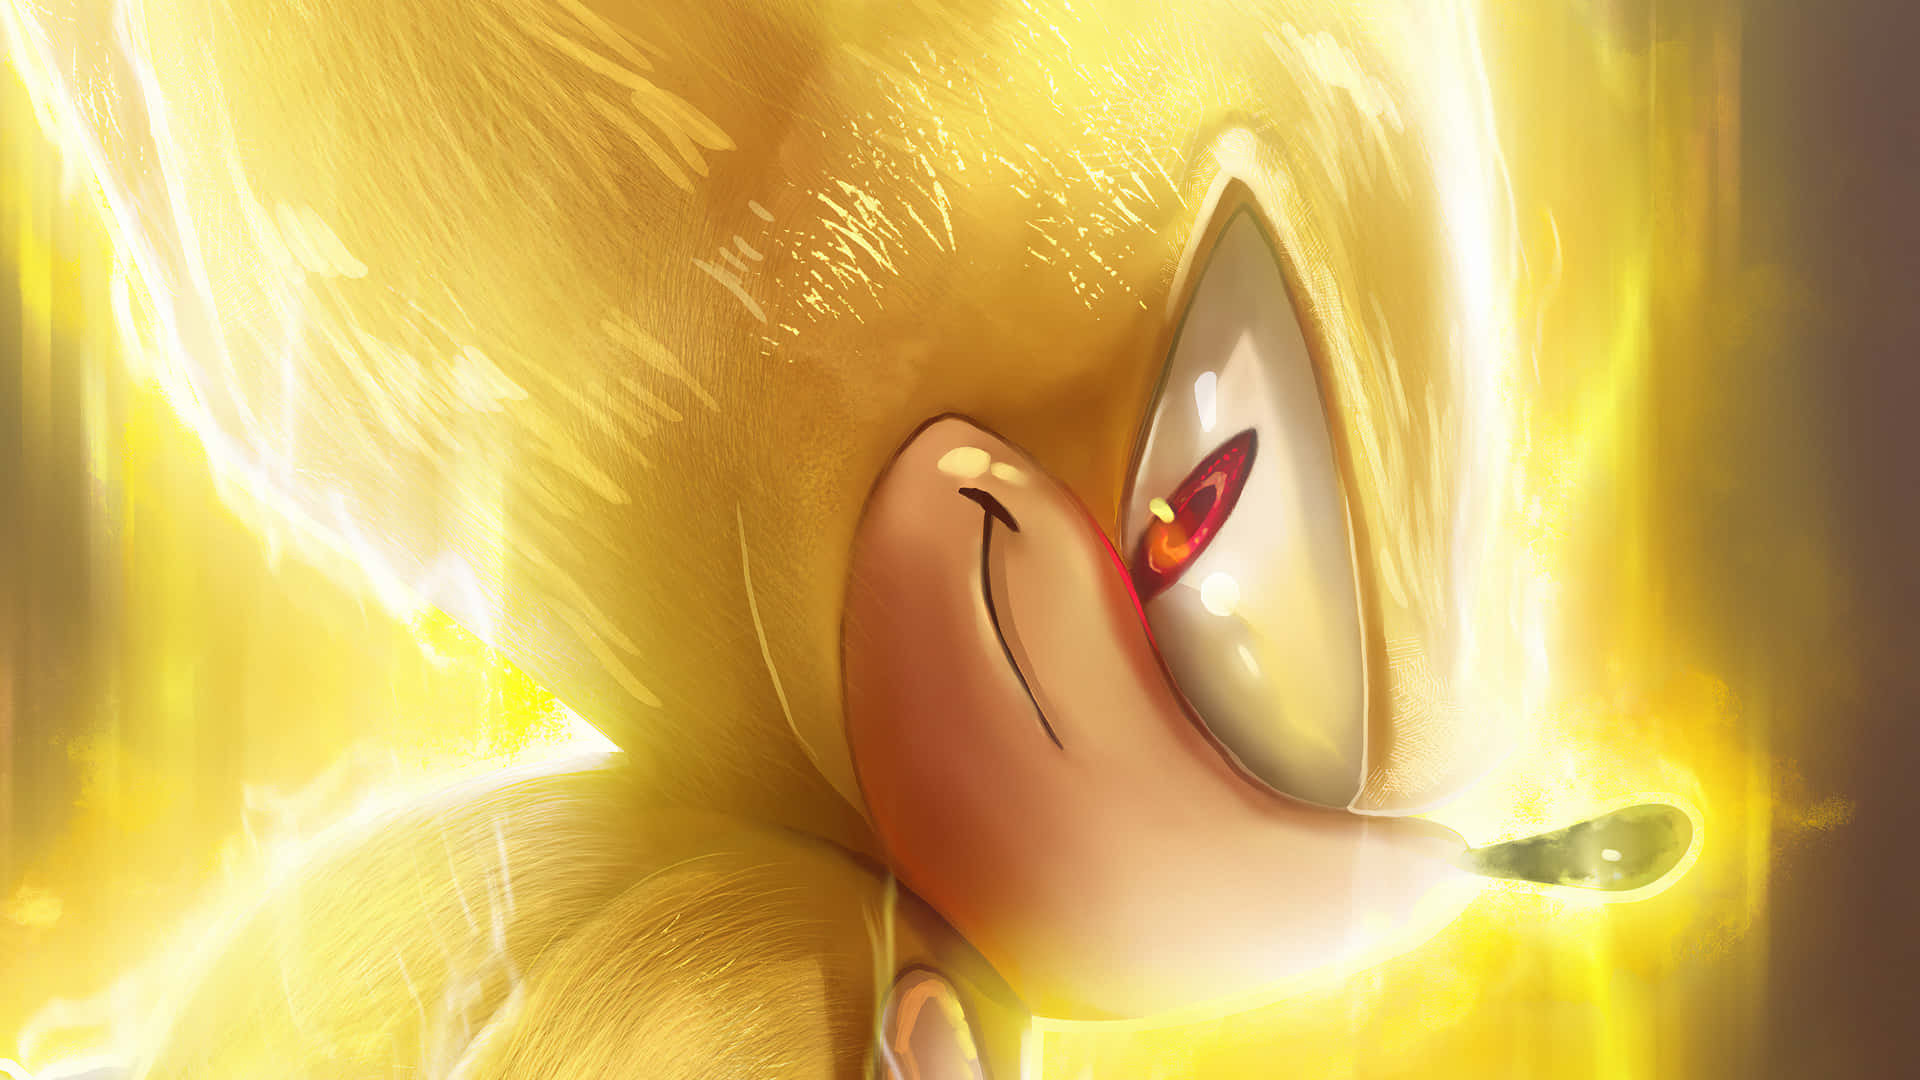 Sonicthe Hedgehog Von Sonicthehedgehog Wallpaper